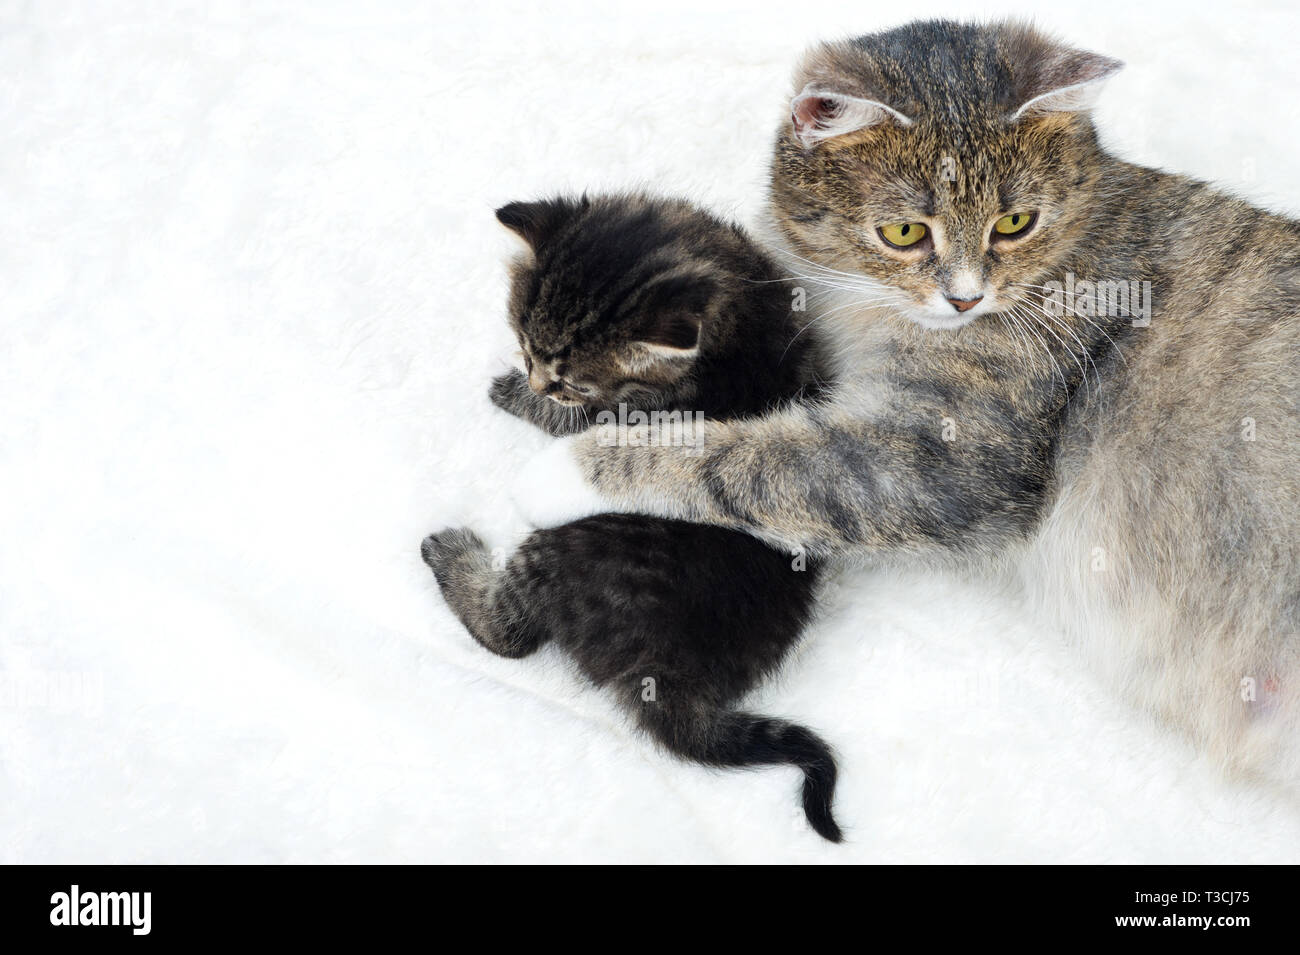 Cat Mutterschaft. Cat liegt mit kleinen Kätzchen. Sie sieht eng und folgt der umgebenden Situation. Stockfoto